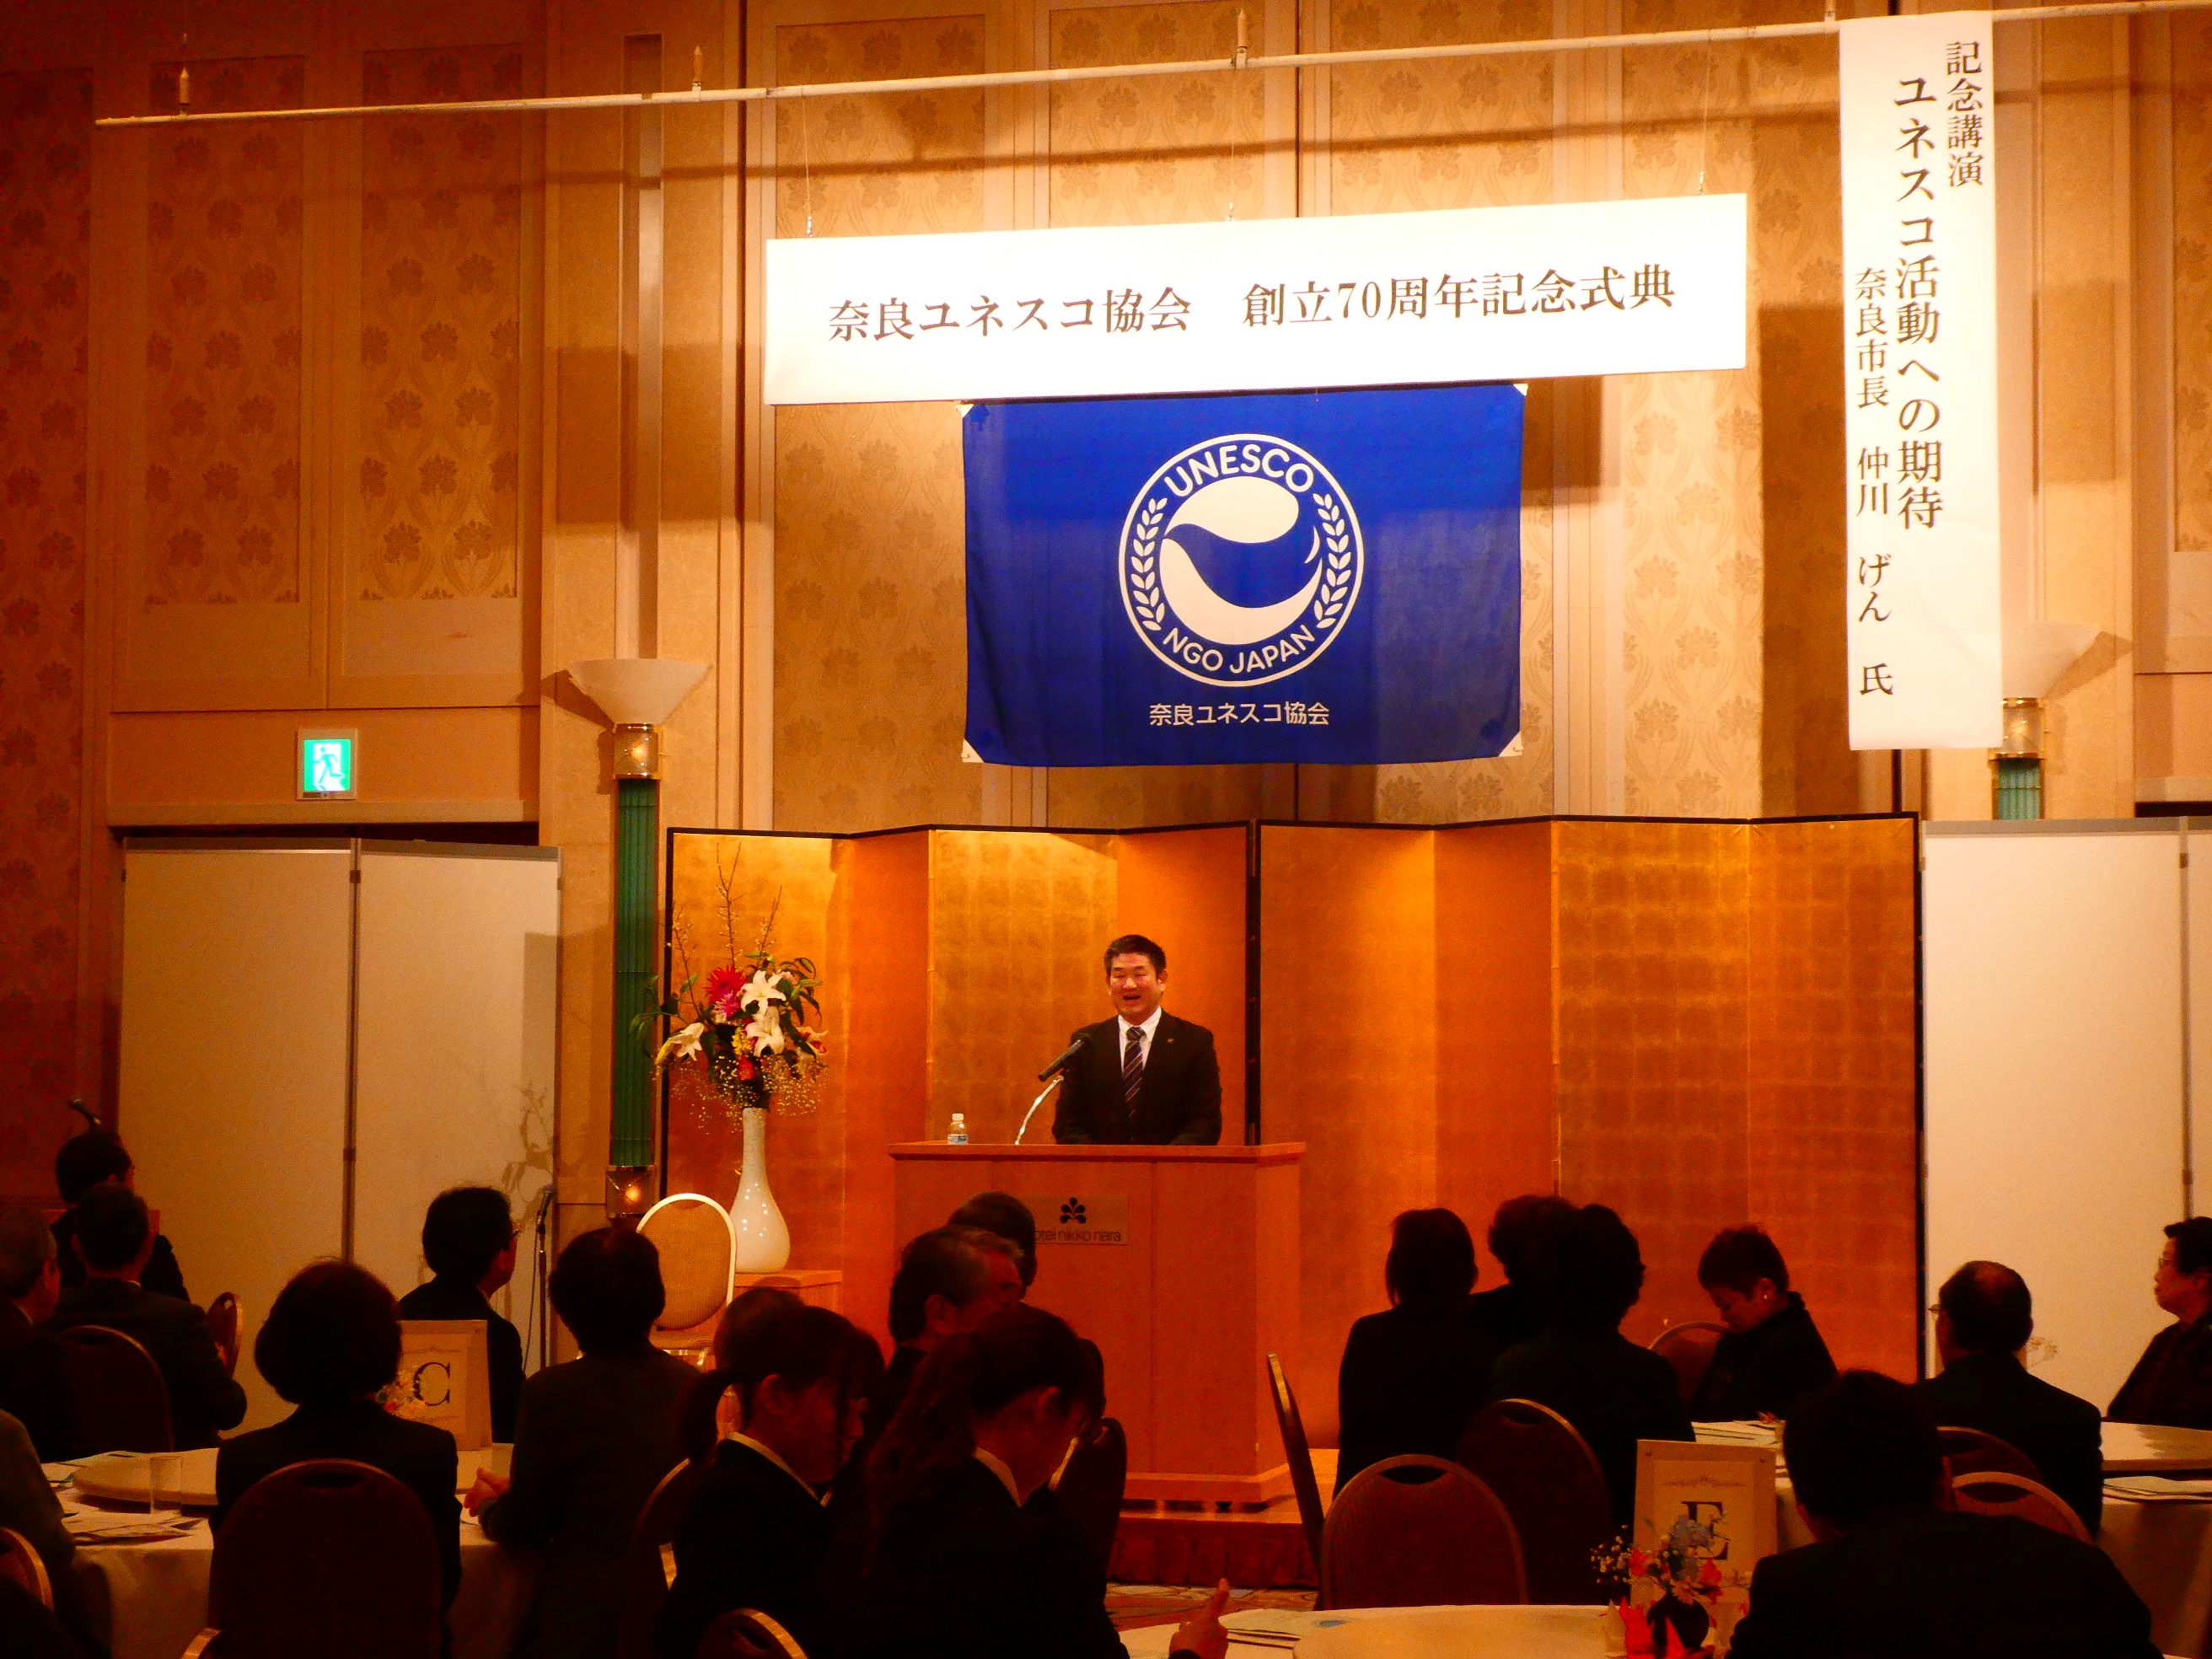 奈良ユネスコ協会創立70周年記念式典の画像